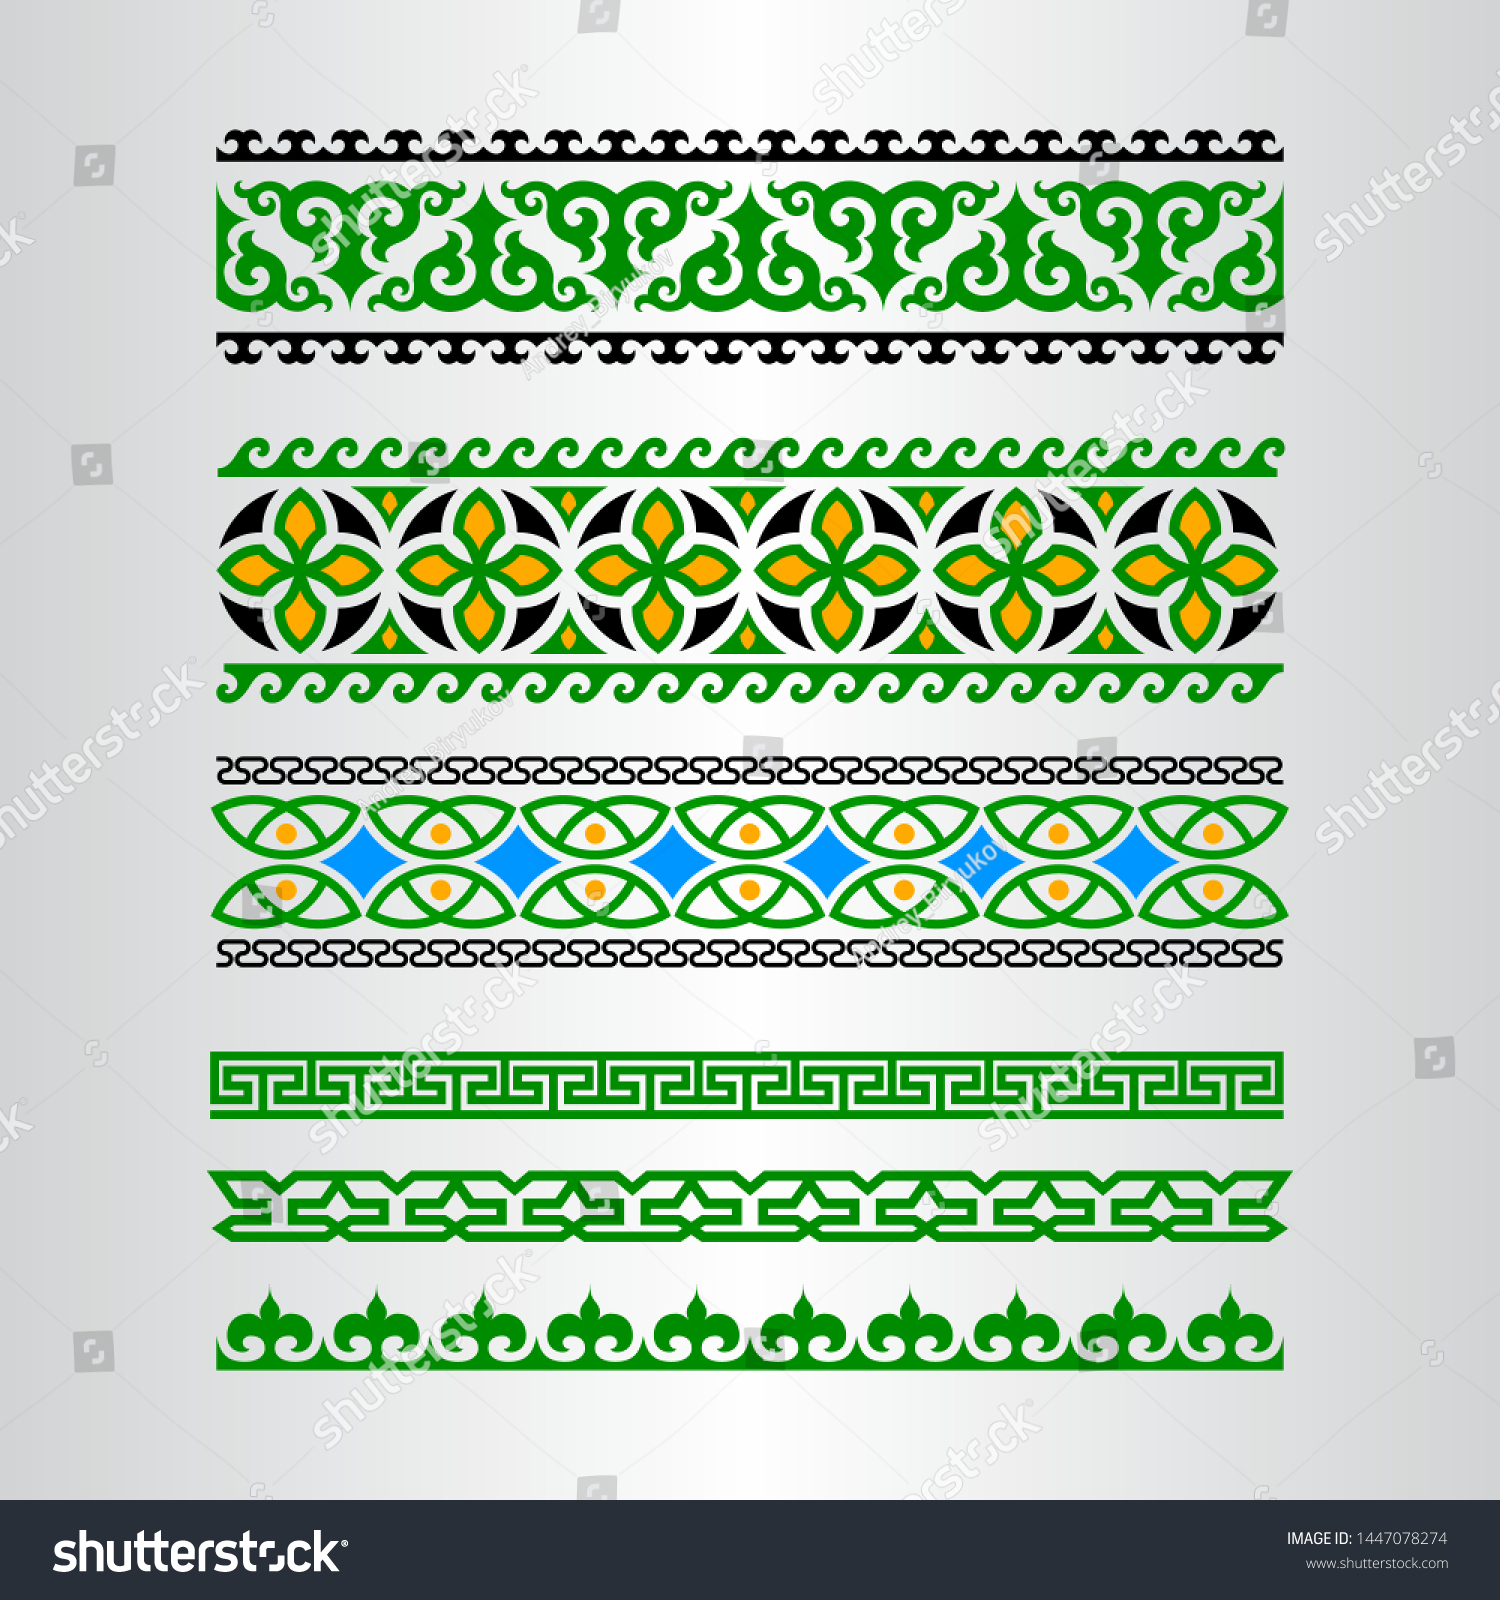 Башкирский ленточный орнамент